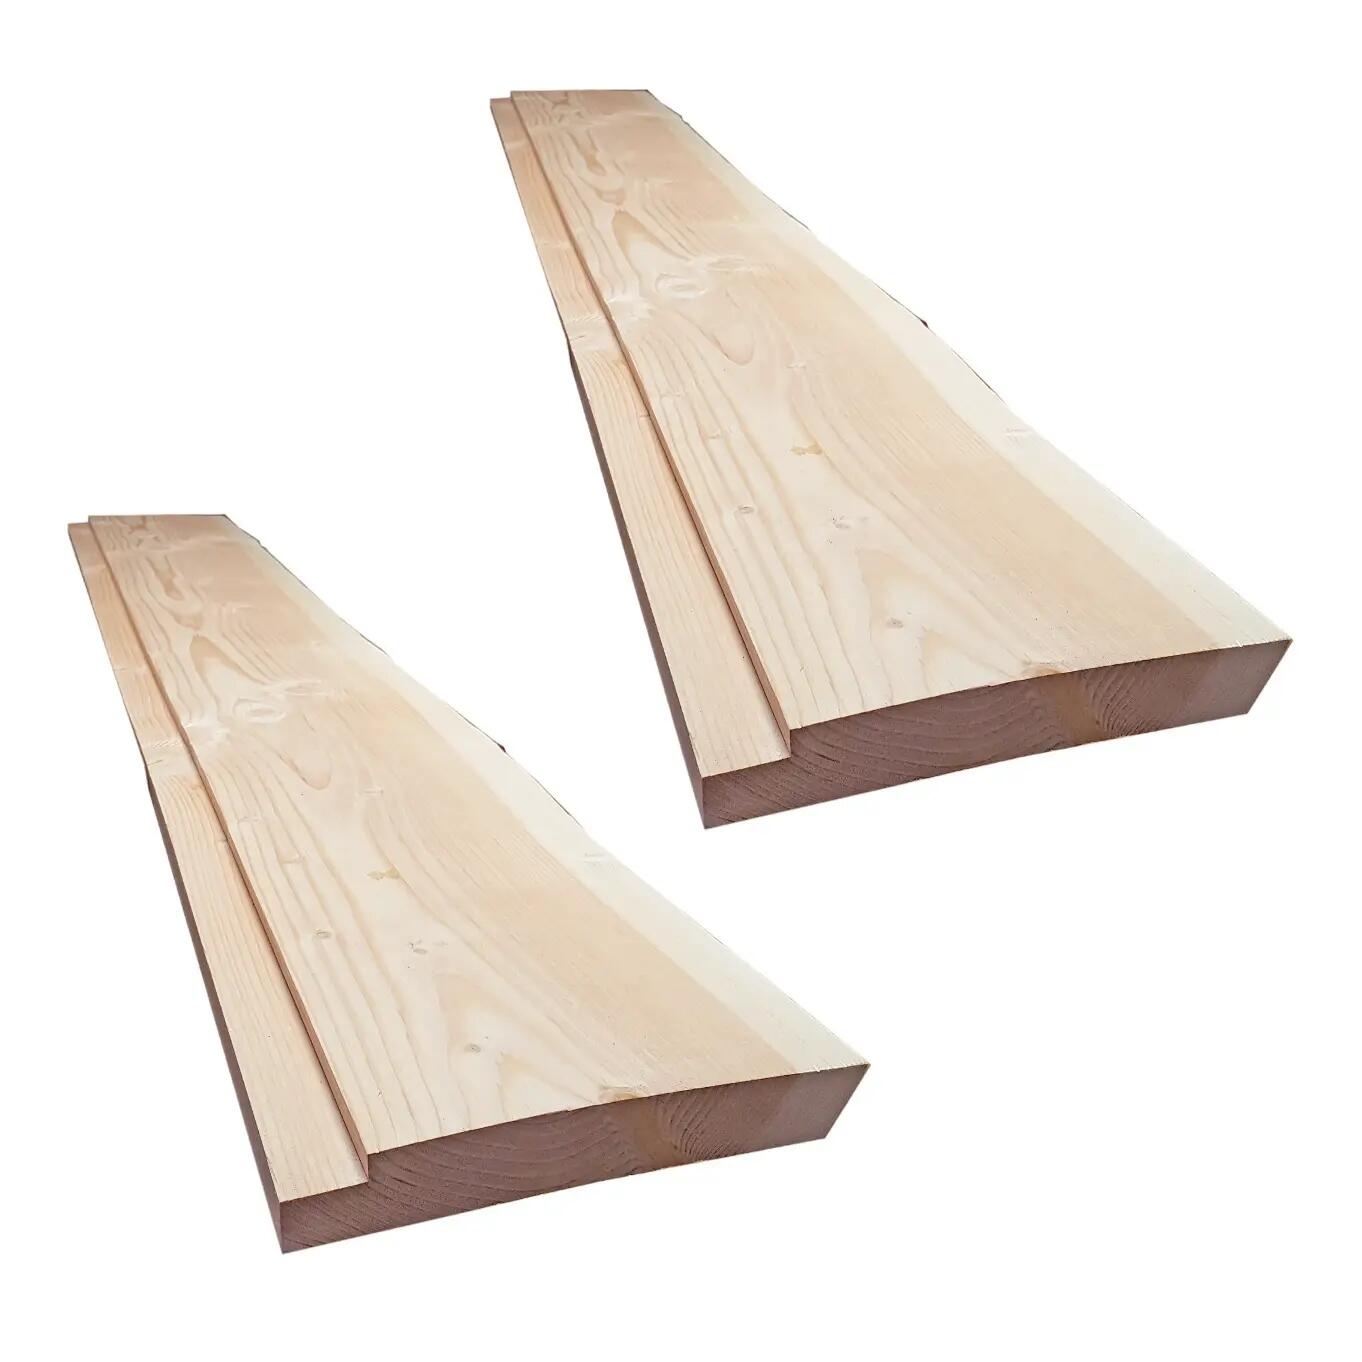 Tavola legno massello Abete in legno 30 x 160 cm Sp 50 mm naturale